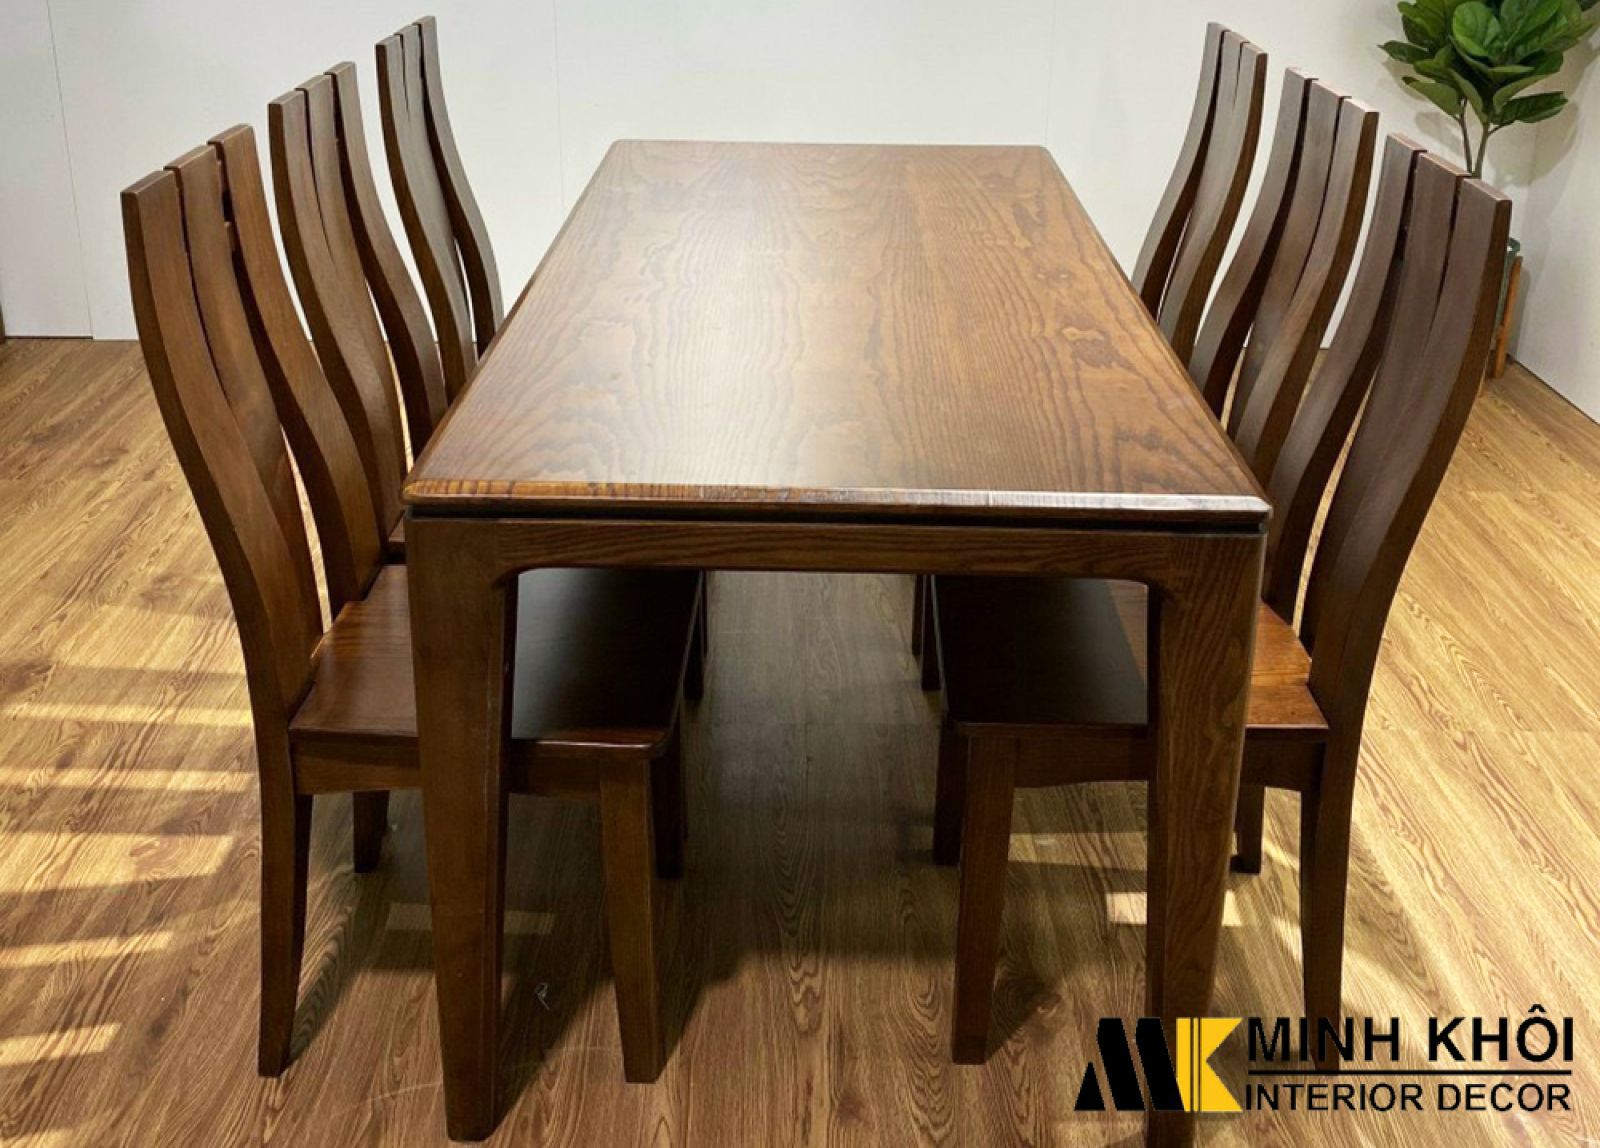 Bộ bàn ăn gỗ sồi - Bộ bàn ăn gỗ sồi sẽ đem đến cho căn bếp nhà bạn vẻ đẹp sang trọng và không gian ấm cúng. Chúng tôi tự hào giới thiệu những bộ bàn ăn gỗ sồi tuyệt đẹp làm bằng gỗ tự nhiên và được thiết kế đặc biệt để phù hợp với các phong cách trang trí khác nhau.